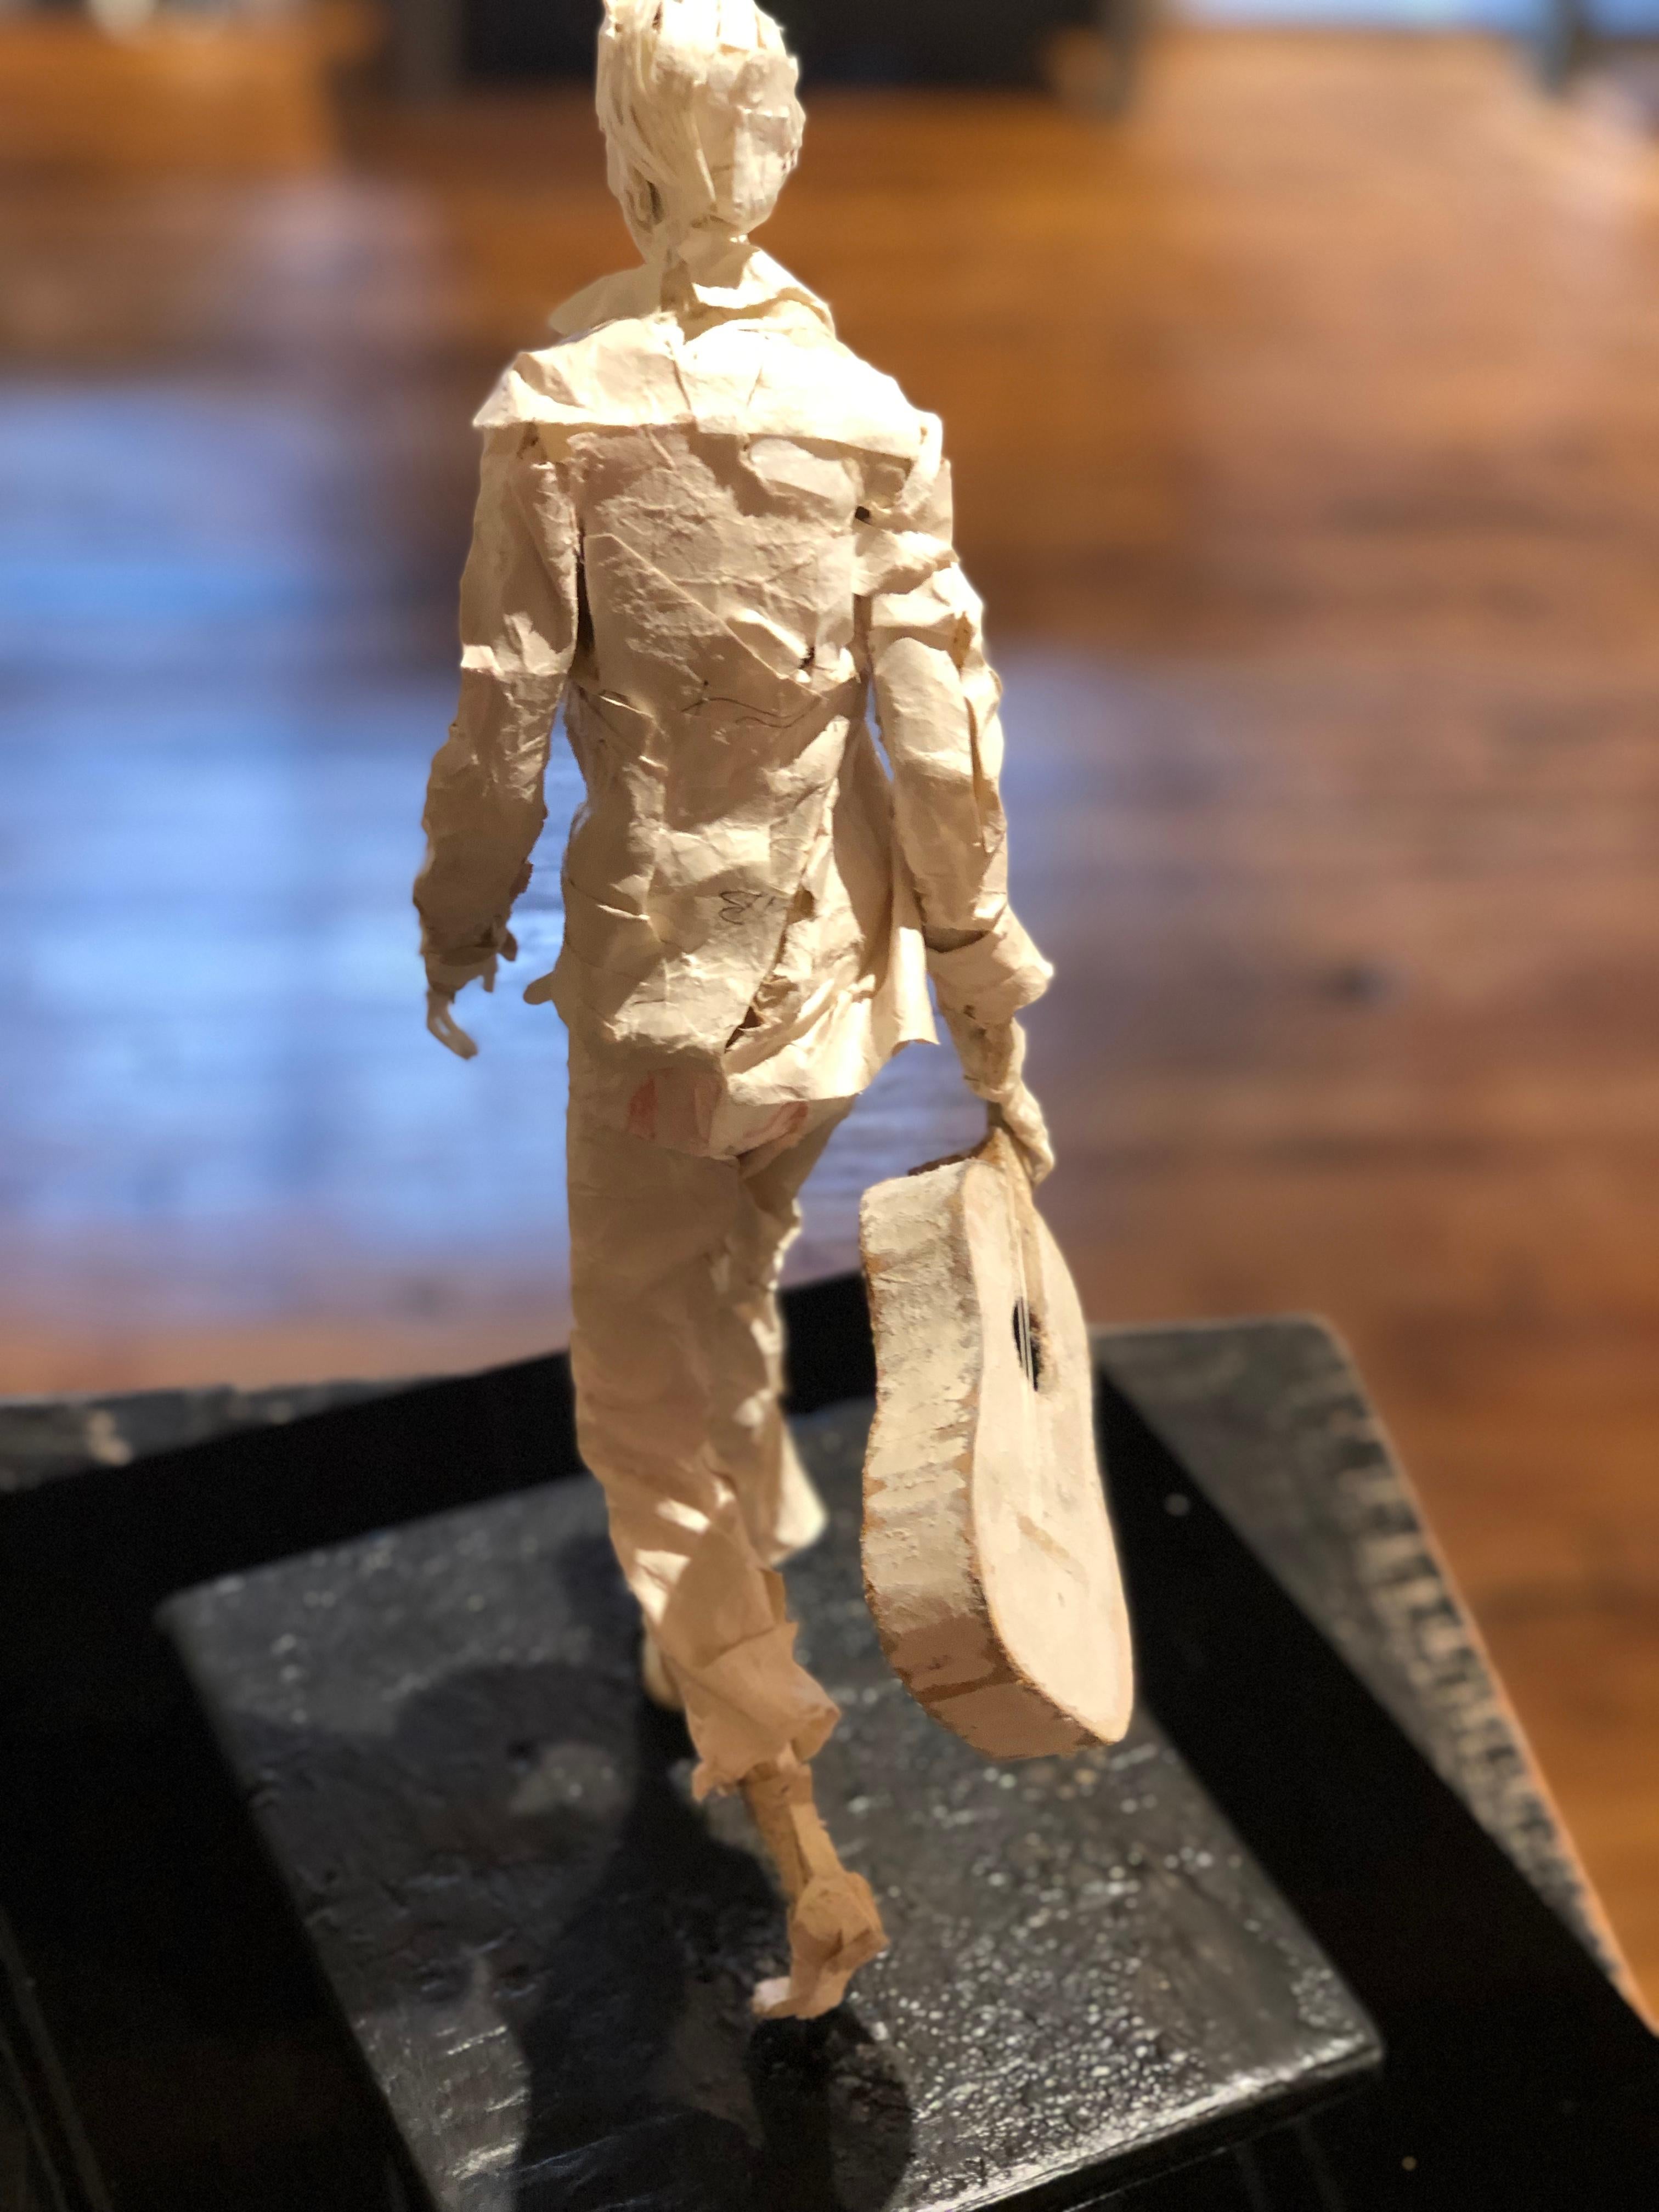 Jimmy - Handmade Paper Sculpture of a Street Musician with Guitar Walking 1